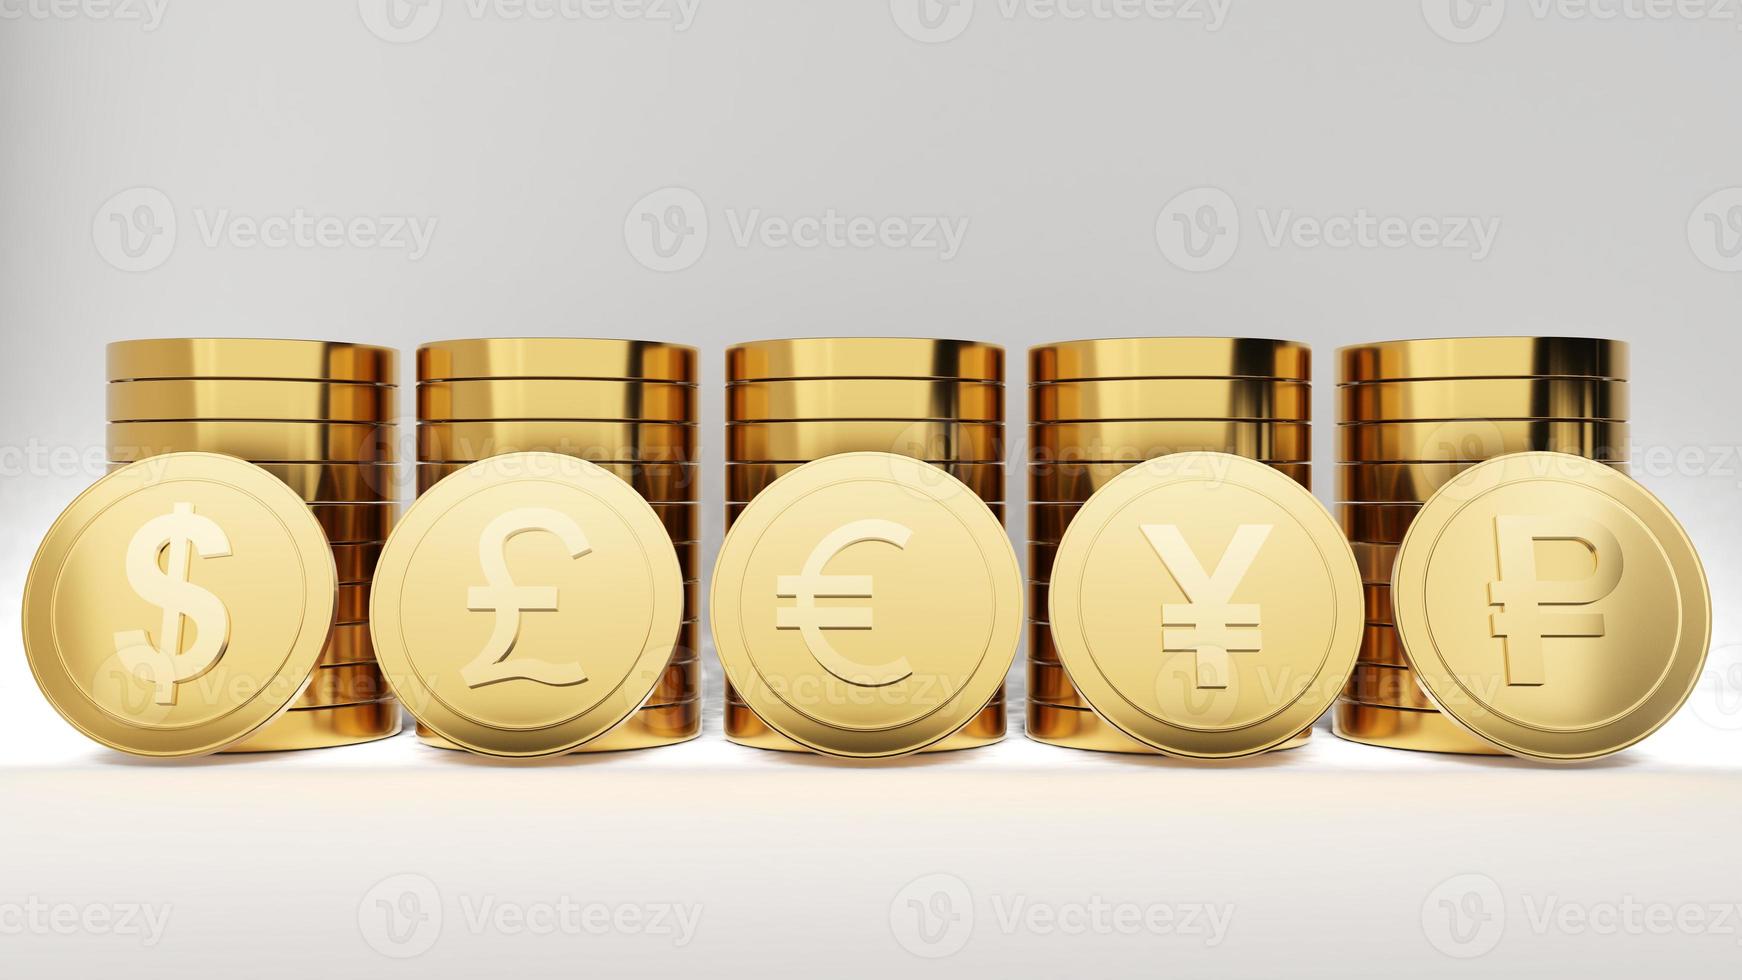 bild von uns, euro, japanische, britische münzen.,währung im devisenwährungssystem,welt der investitionsfinanzierung,3d-rendering foto